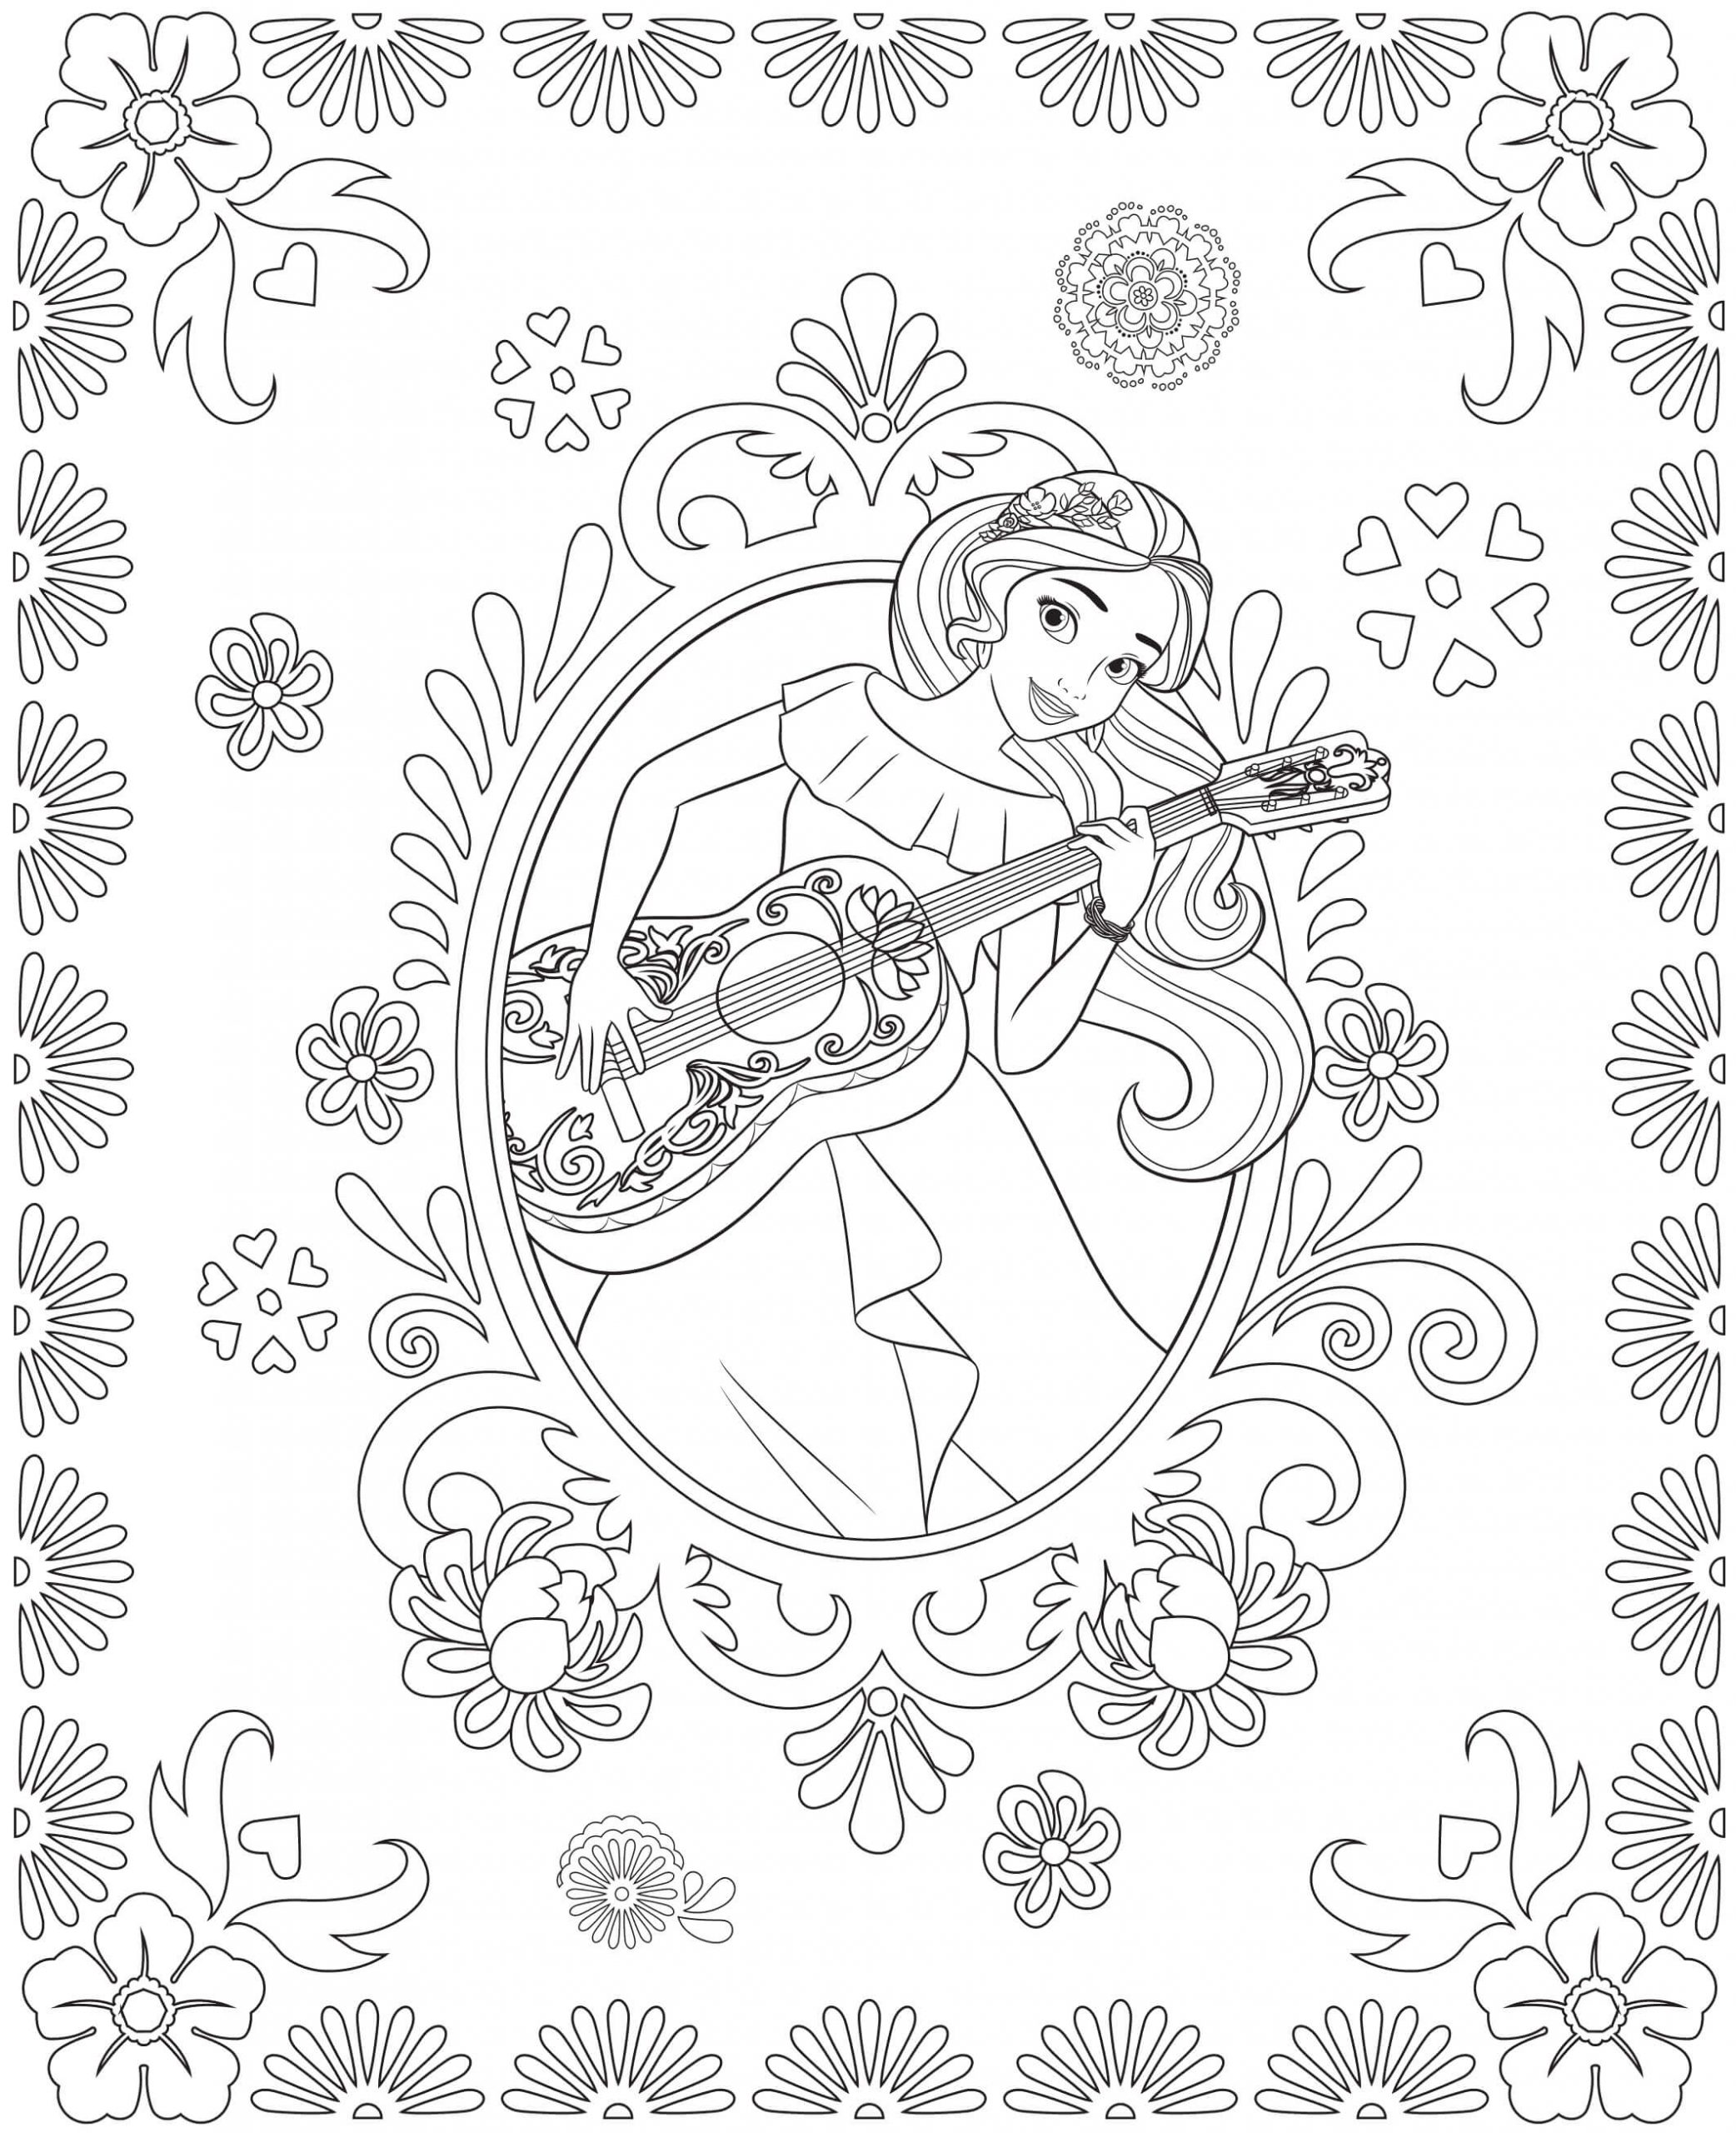 Elena Joue de la Guitare coloring page